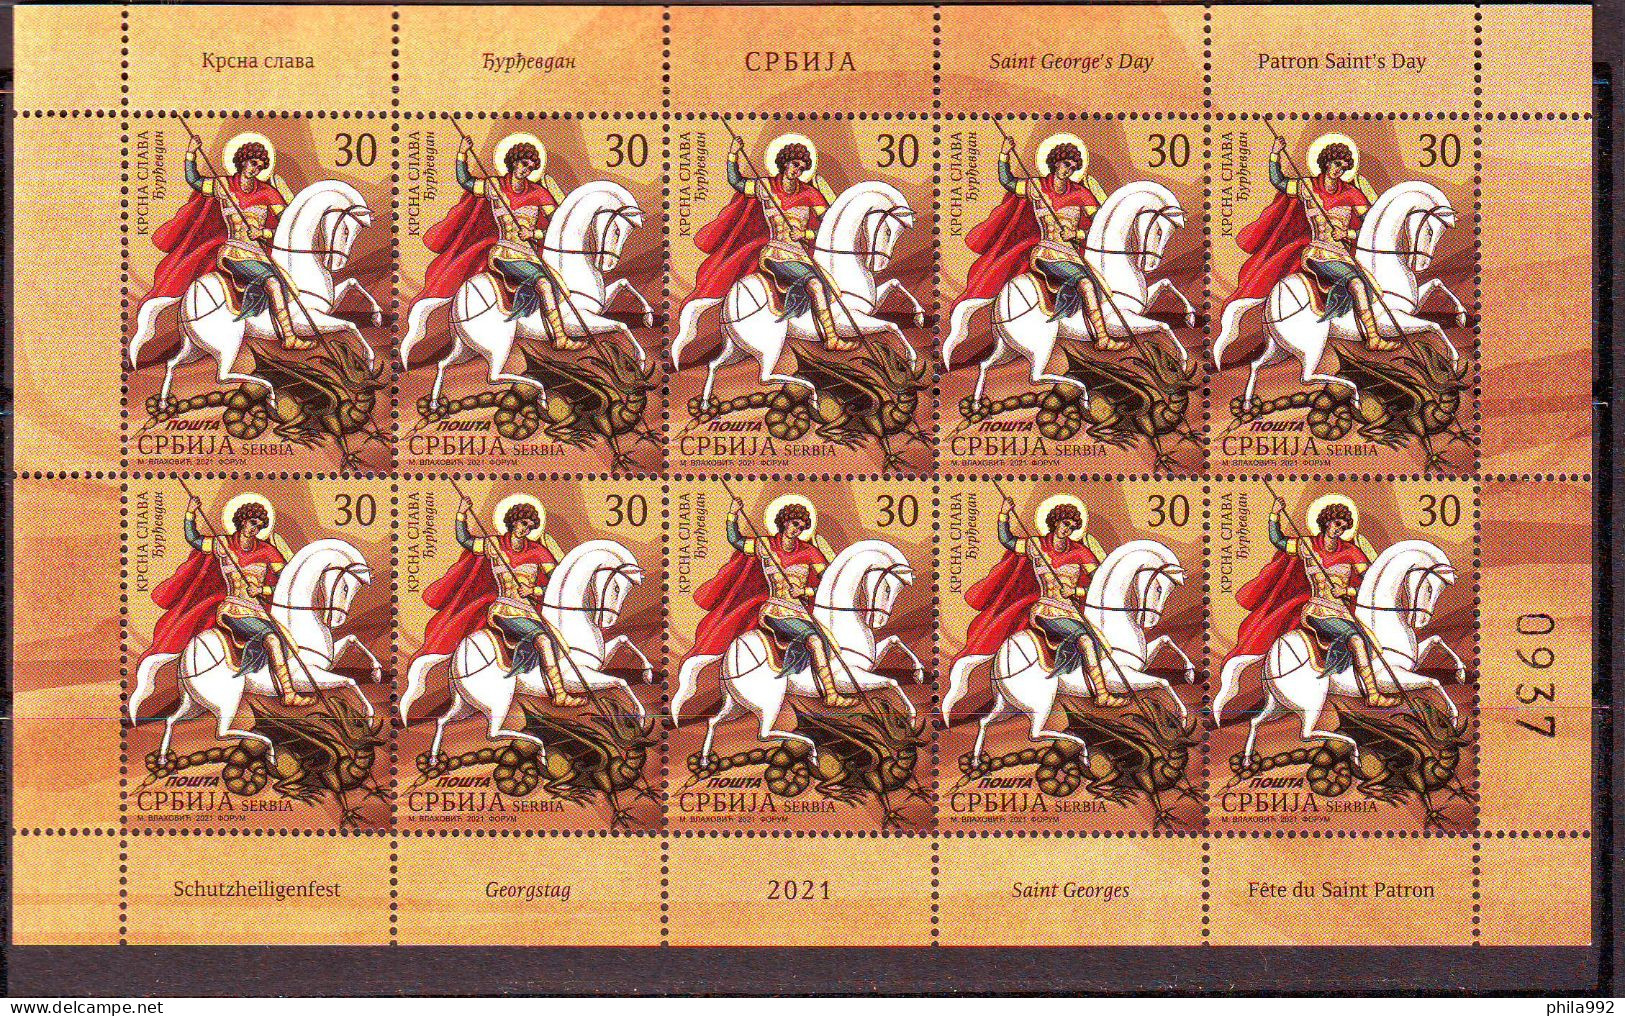 SERBIA 2021 Patron Saint's Day Mini Sheet (10) Mi.No. 1038 MNH - Serbien